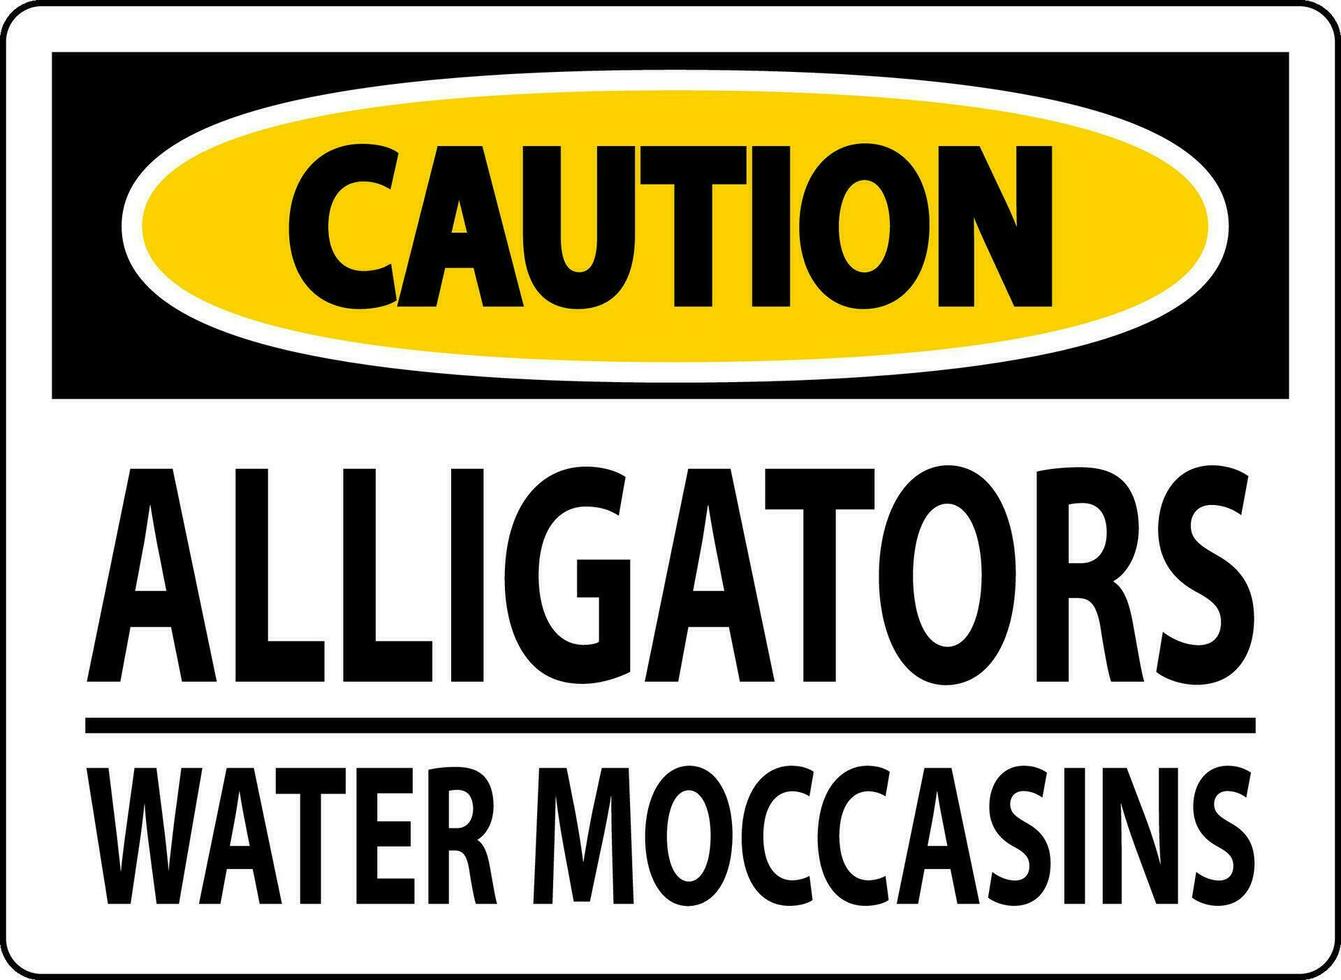 Cuidado placa crocodilos - água mocassins vetor